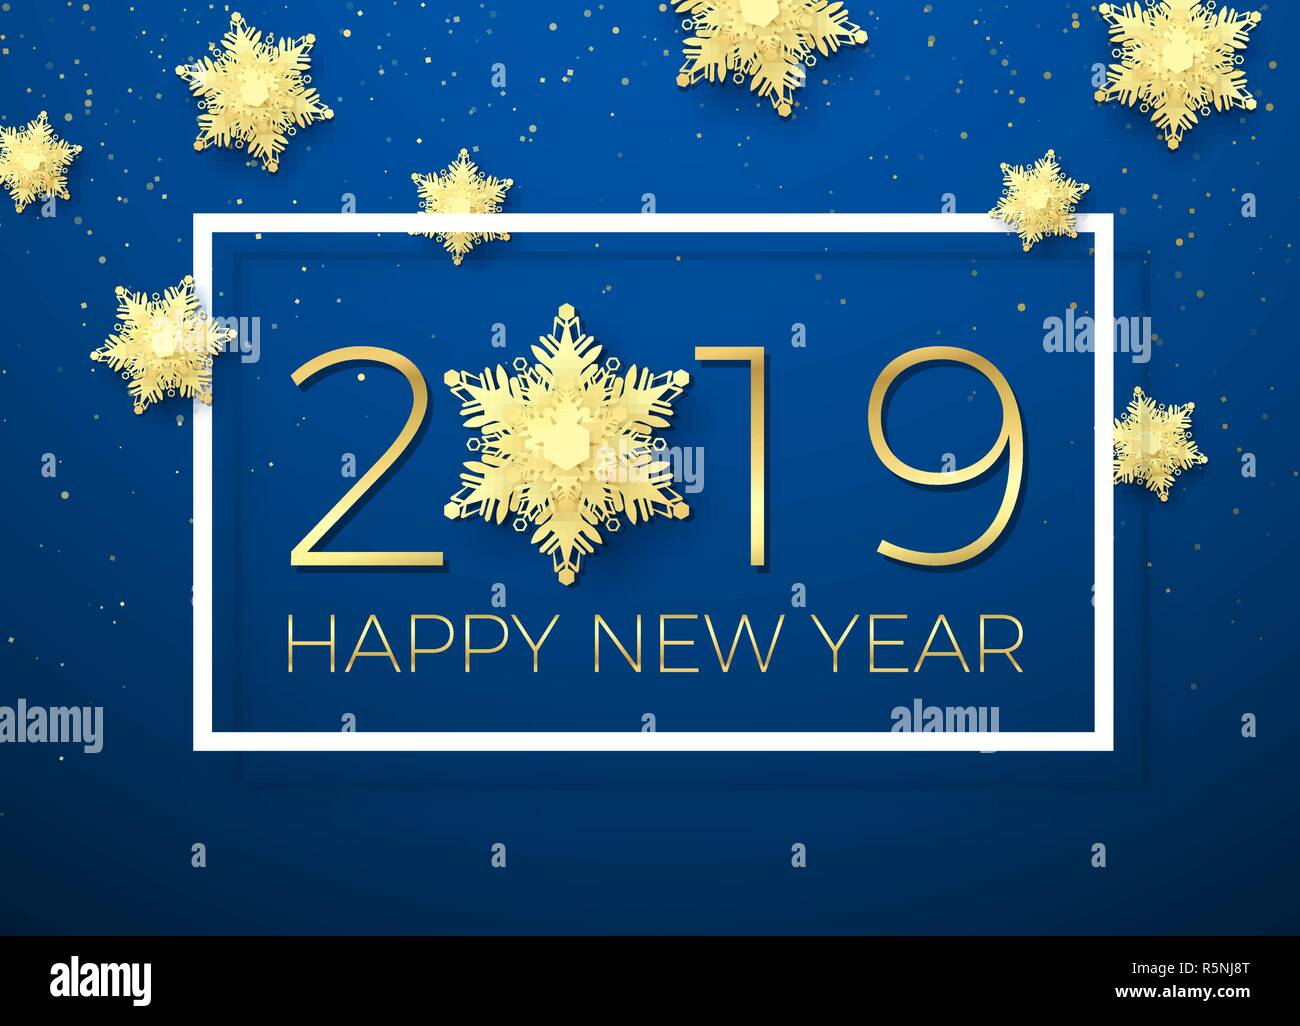 Neues Jahr Grußkarte. Golden Text Frohes Neues Jahr 2019 mit Gold Snowflake. Urlaub kreative Grußkarte Design mit weißen Rahmen und golden snowfal Stock Vektor